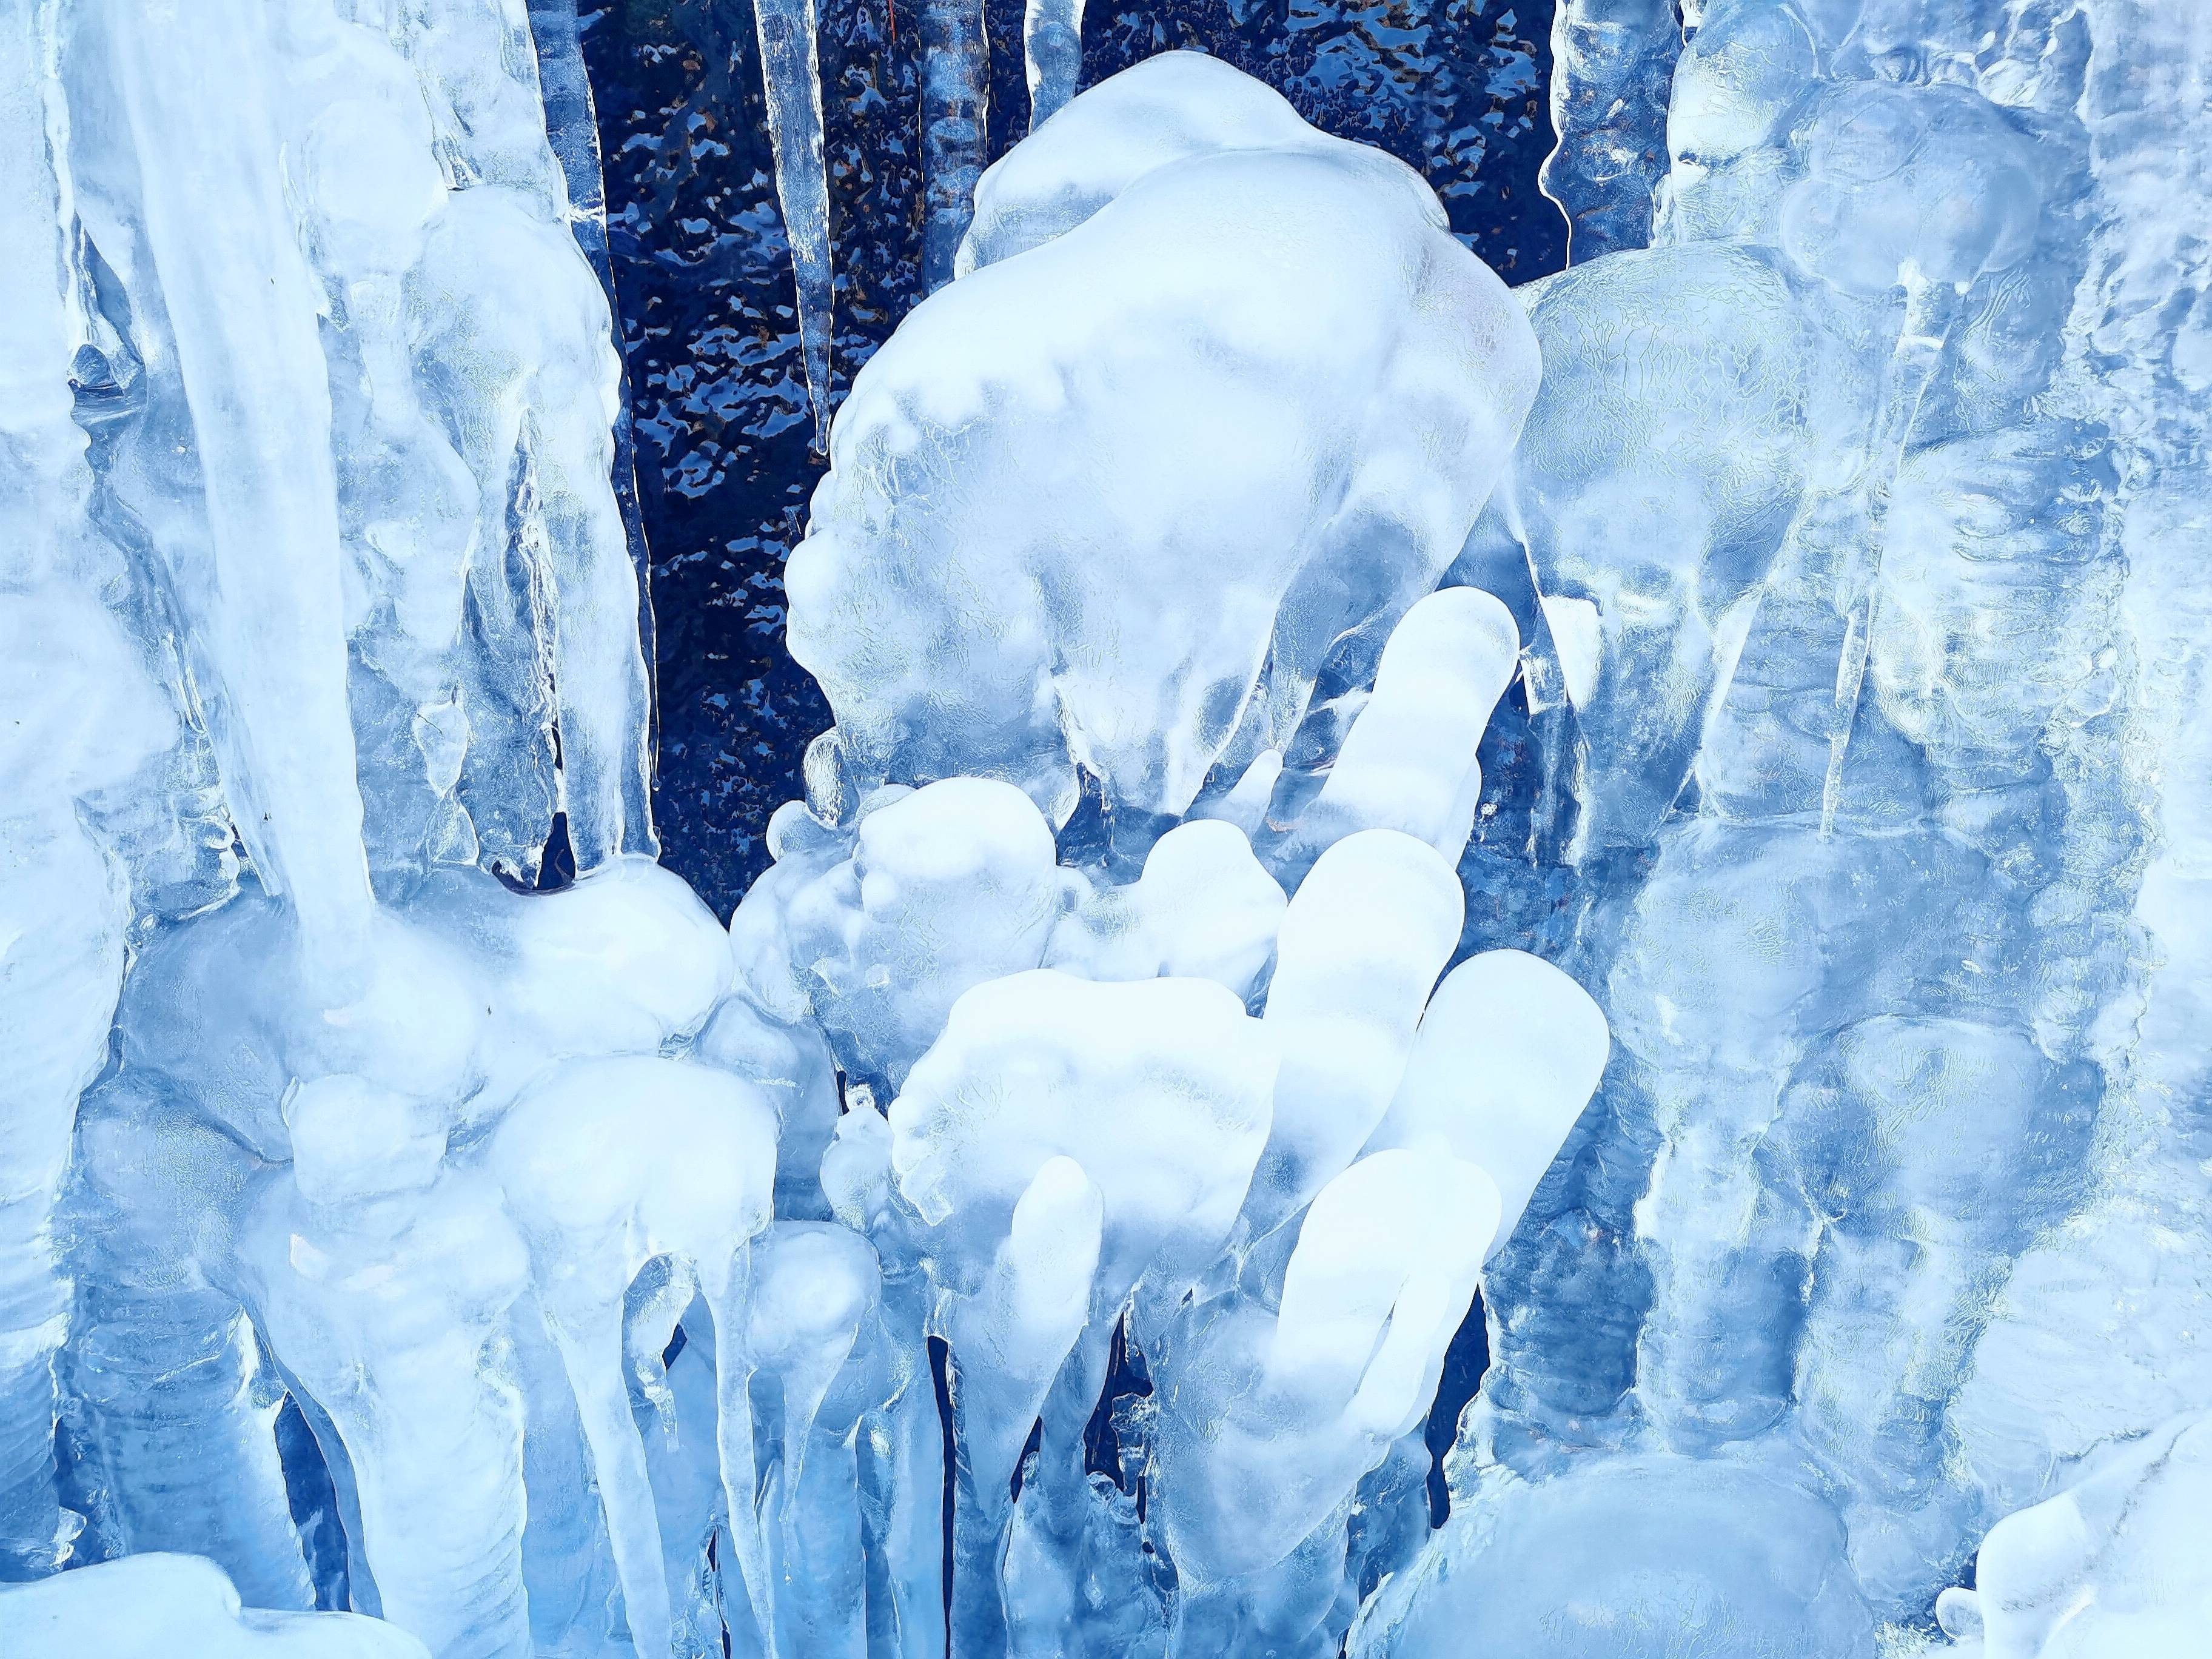 龙峪湾的冰挂千姿百态晶莹剔透无与伦比